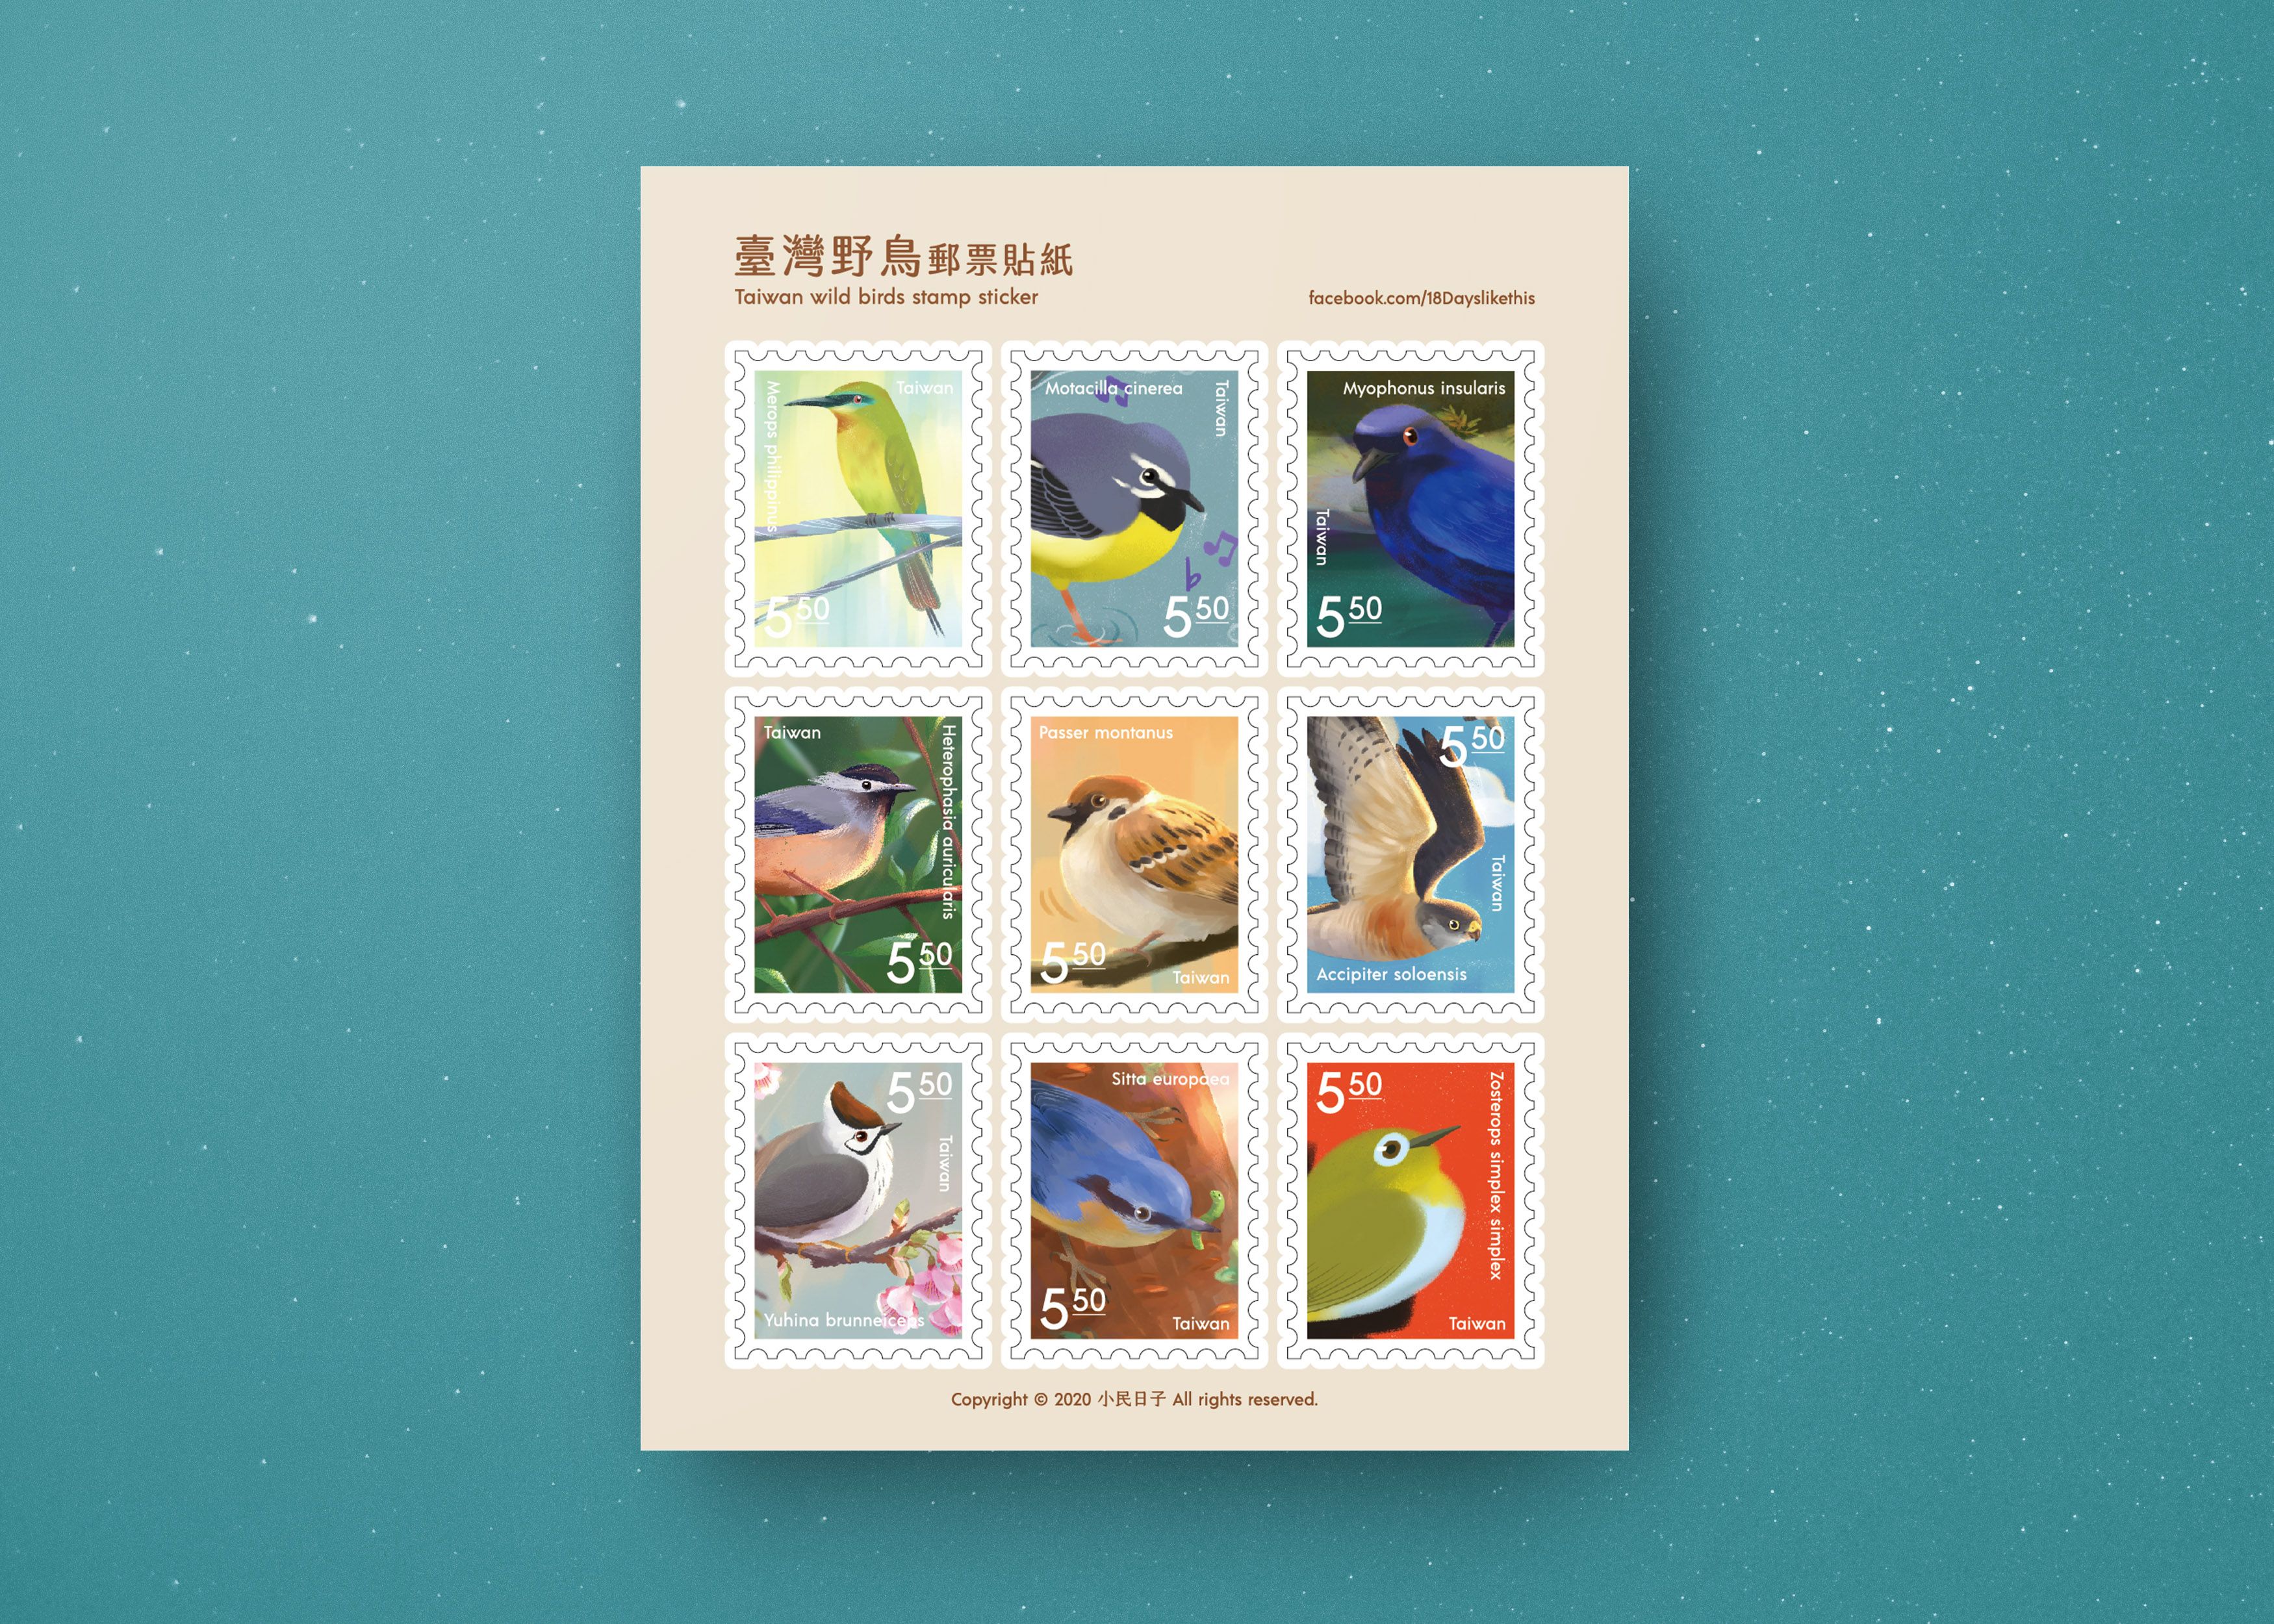 臺灣野鳥郵票貼紙